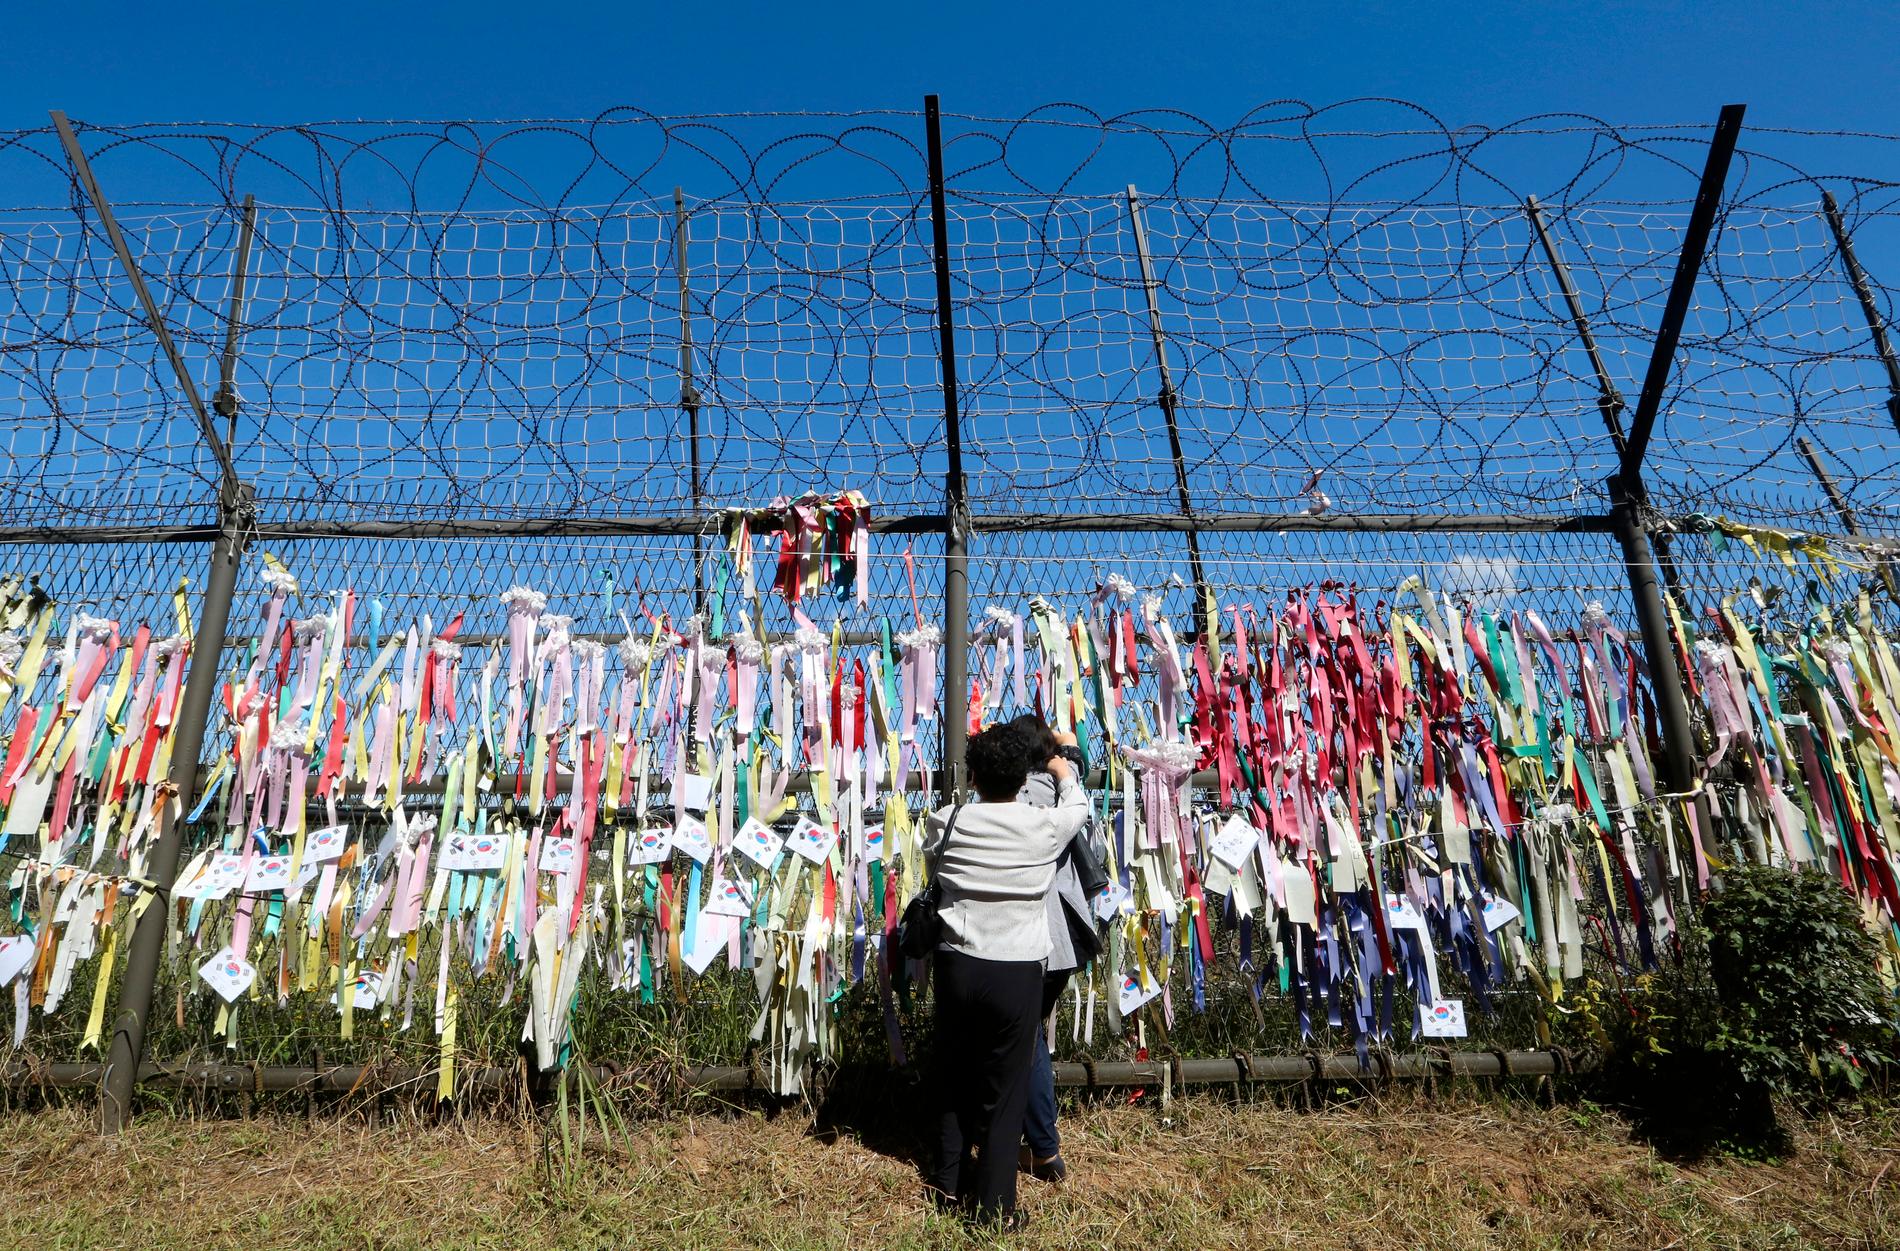 Ett staket nära gränsen mellan Syd- och Nordkorea där avhoppare från norr fäst meddelanden med hopp om återförening av de båda länderna. Arkivbild.